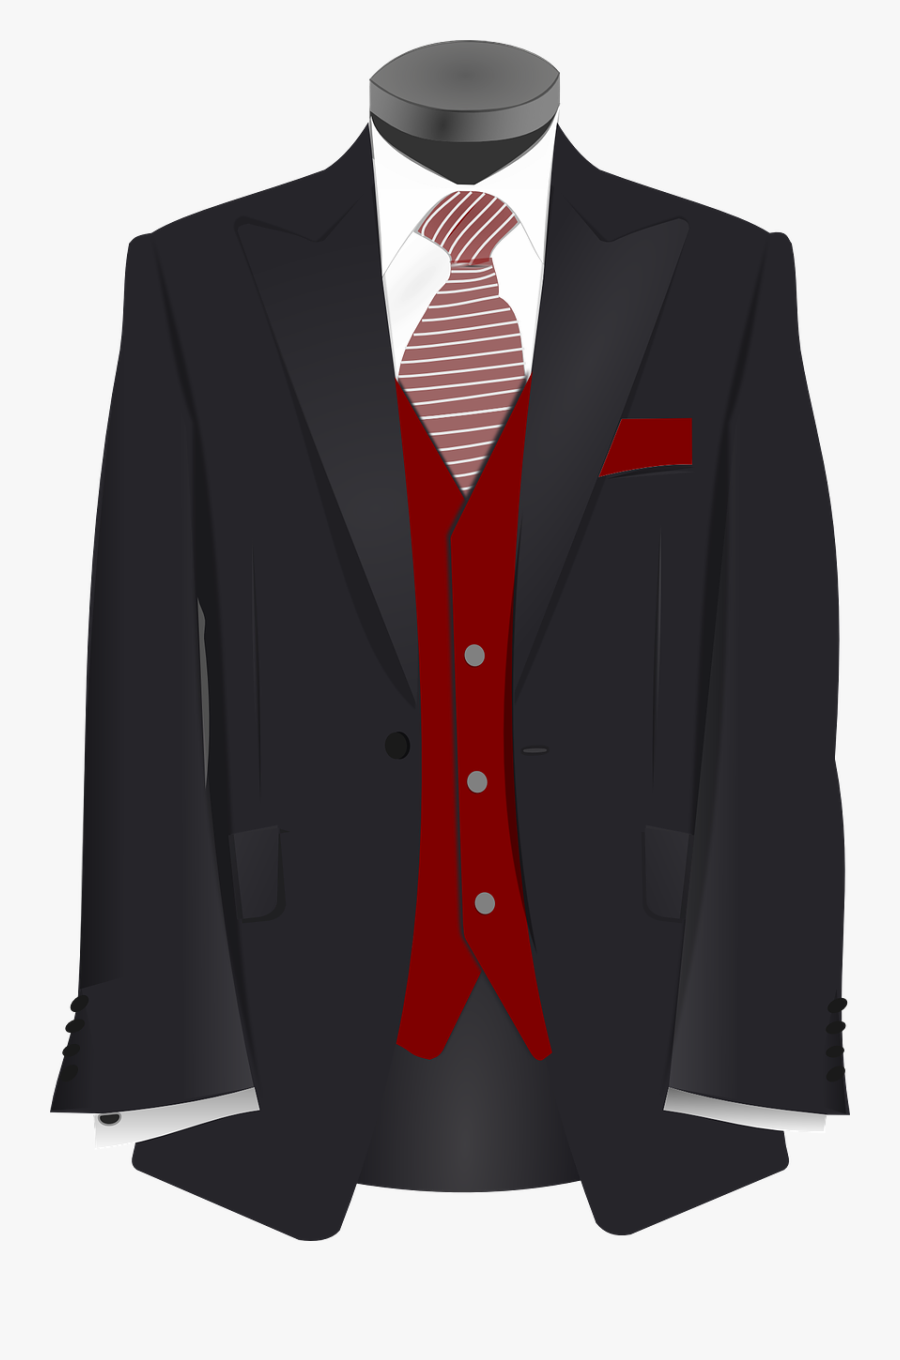 Transparent Suit And Tie Clipart - Wedding Suit Cartoon, Transparent Clipart